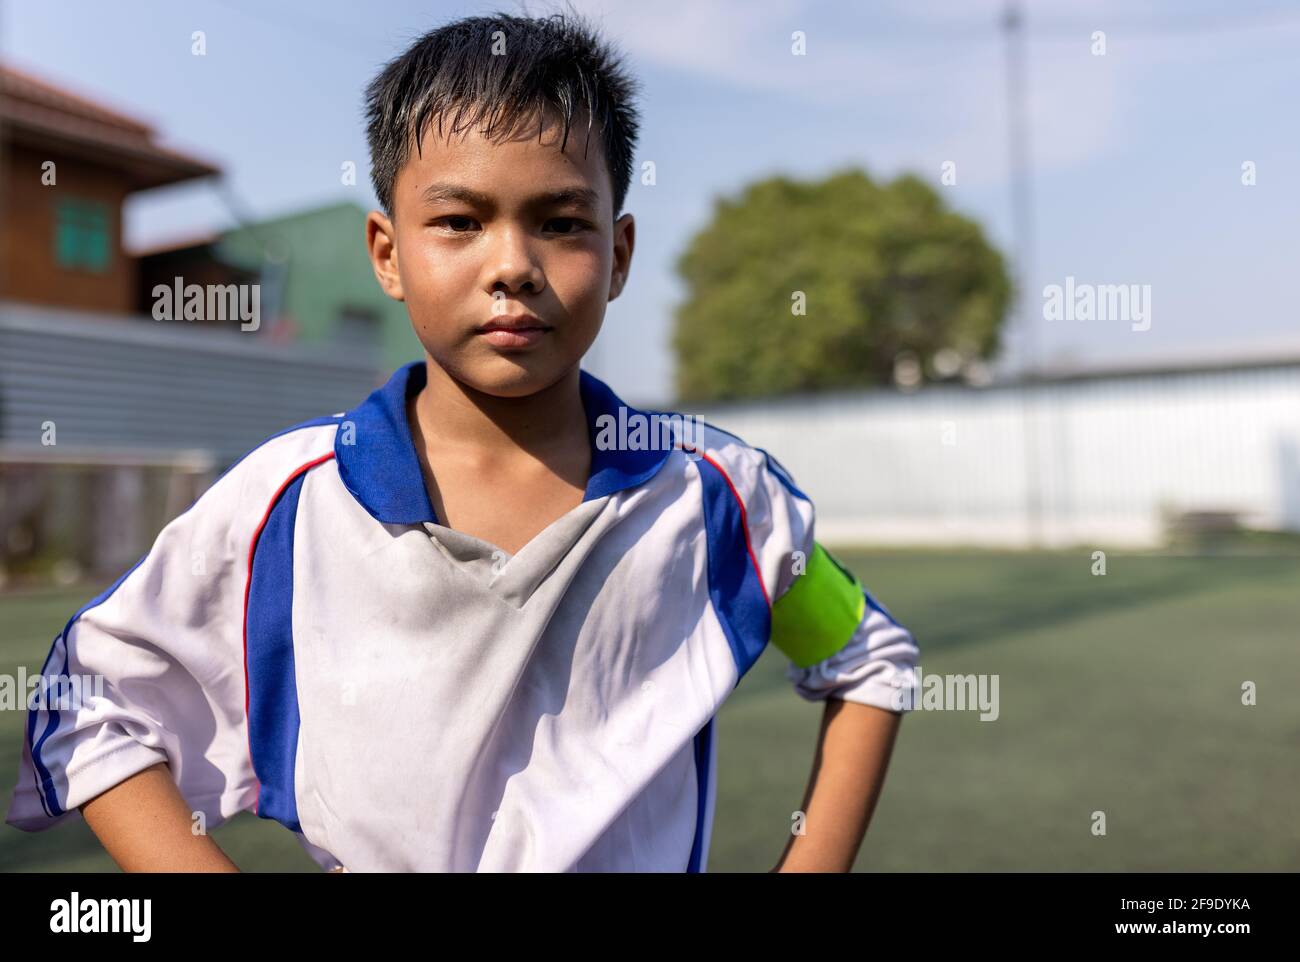 Nettes kleines Kind träumt davon, Fußballspieler zu werden. Sport- und Aktivitätskonzept Stockfoto